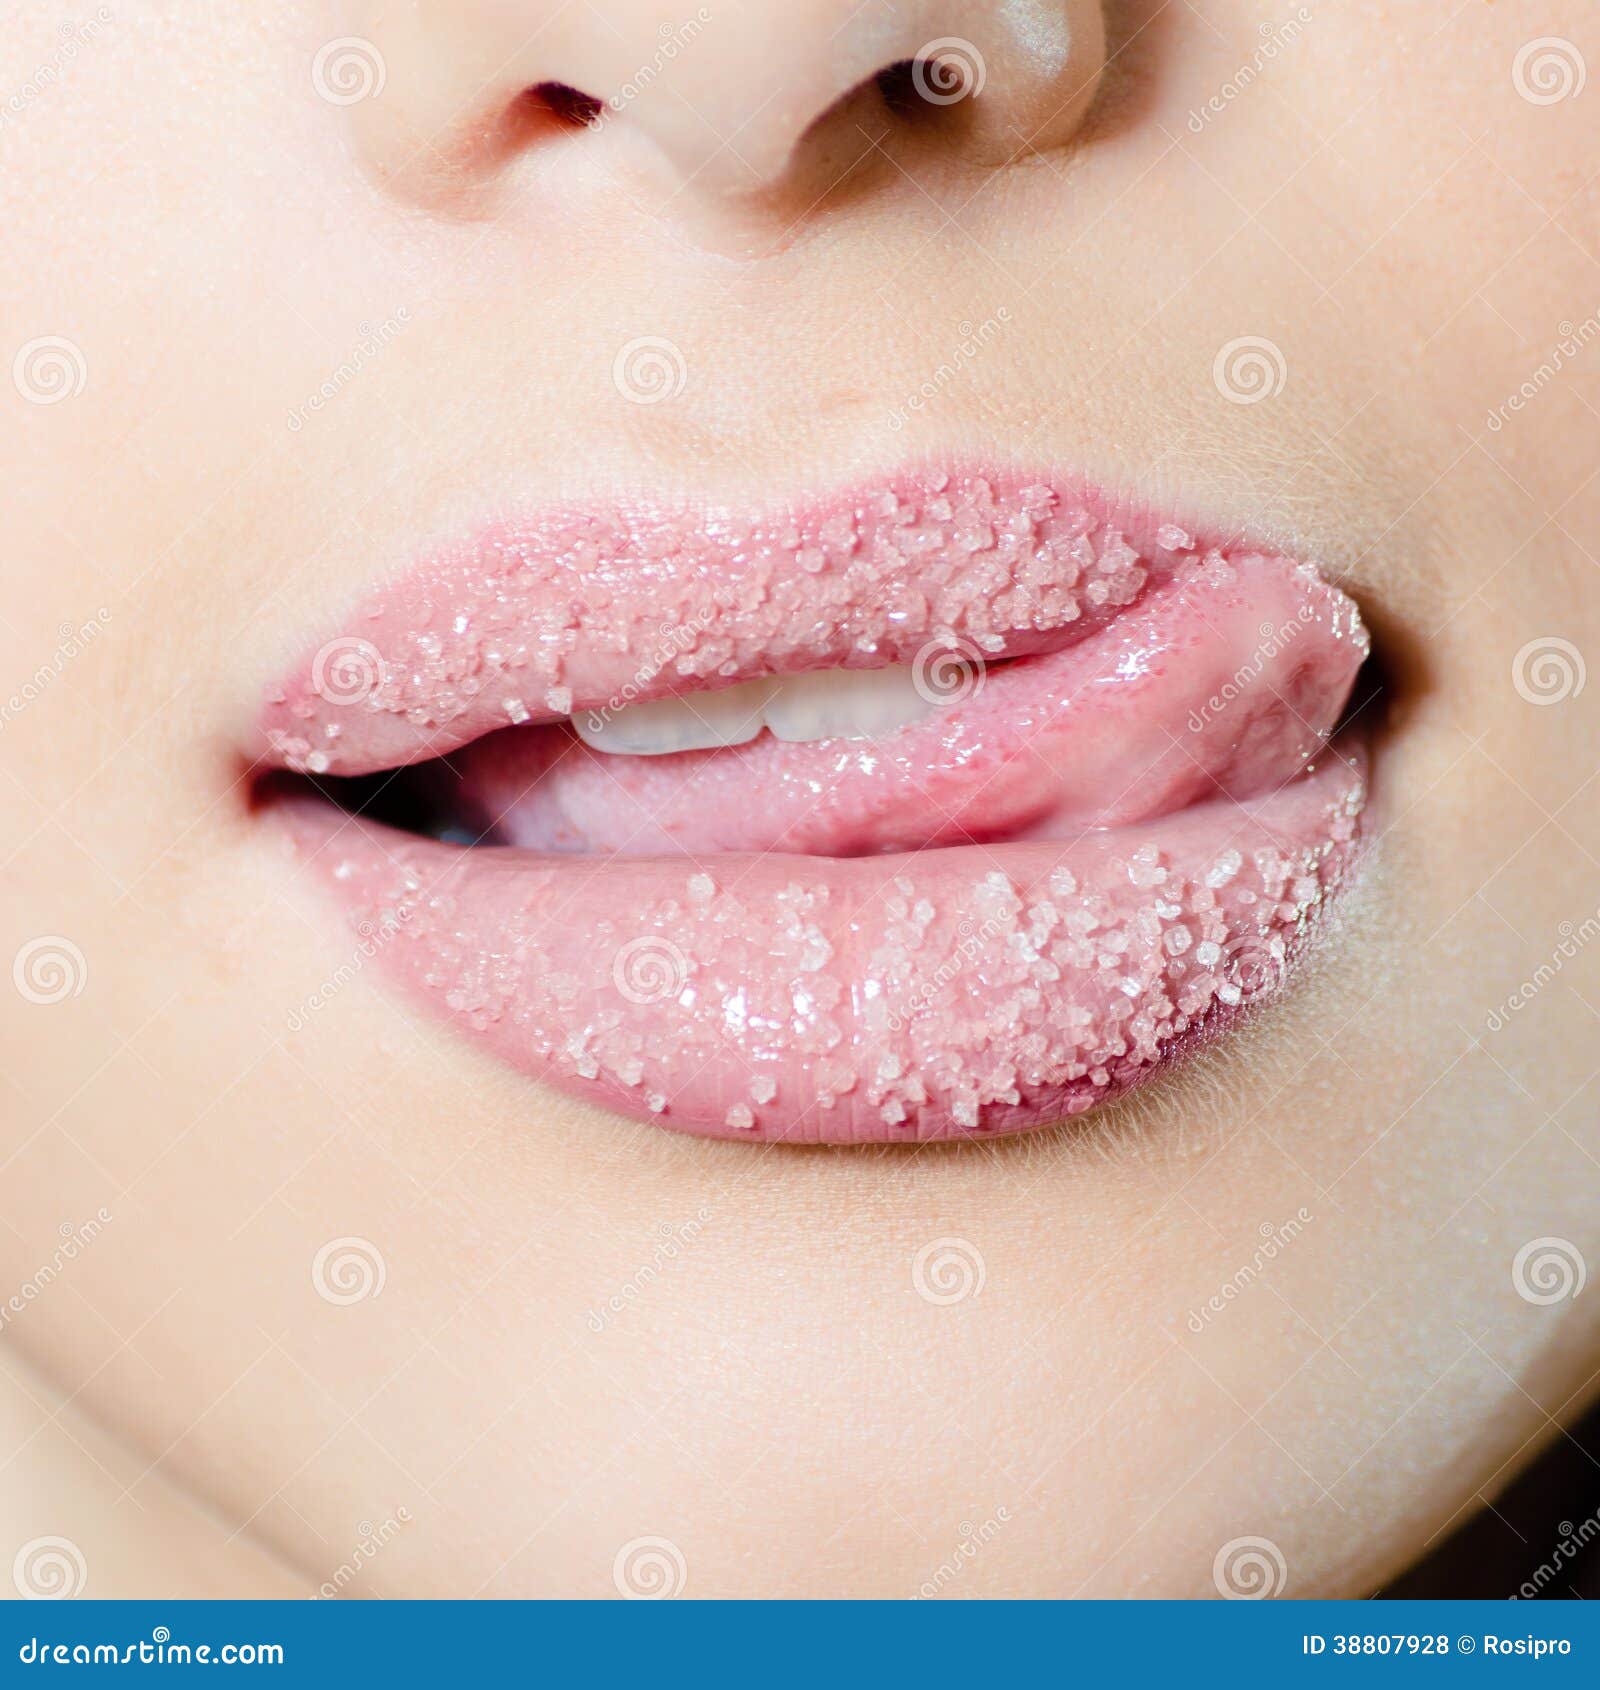 Розовая слюна. Красивые губы фото. Губы в сахаре. Вкус губ.